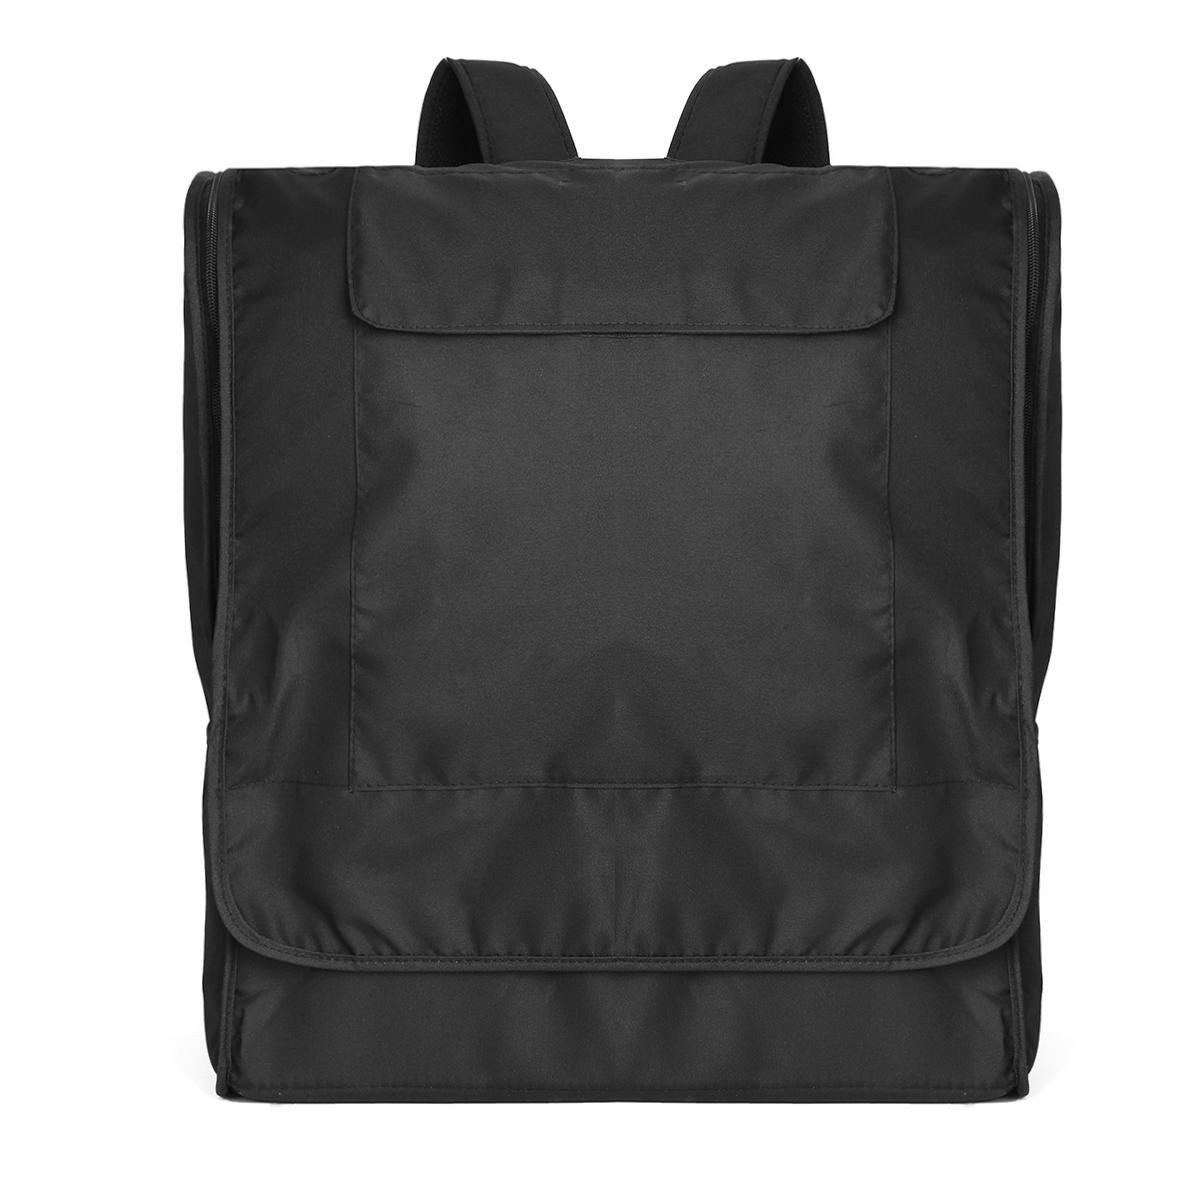 Τσάντα αποθήκευσης Οξφόρδη Stroller Travel Camping Baby Backpack Αδιάβροχη τσάντα ώμου